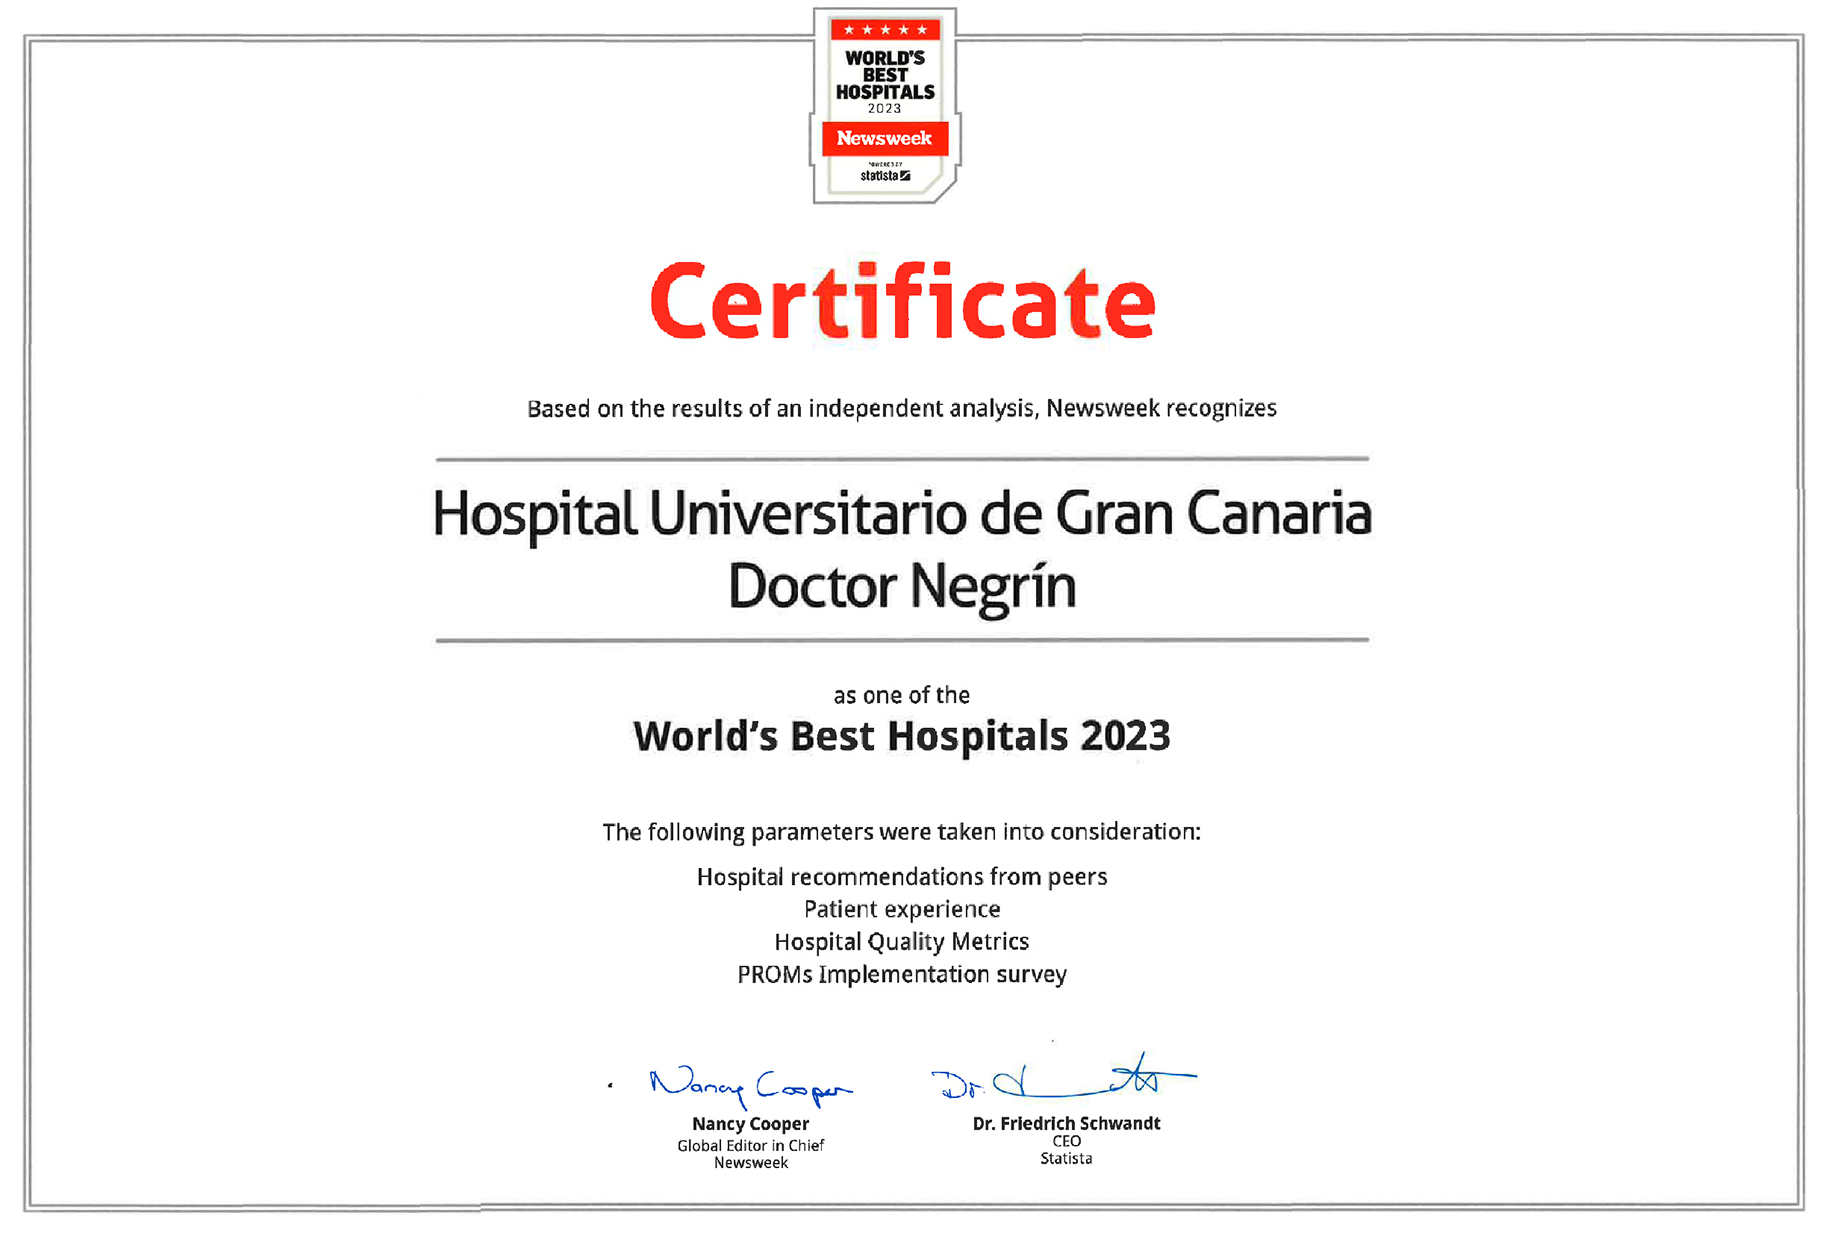 Certificado de Newsweek World’s Best Hospitals 2023